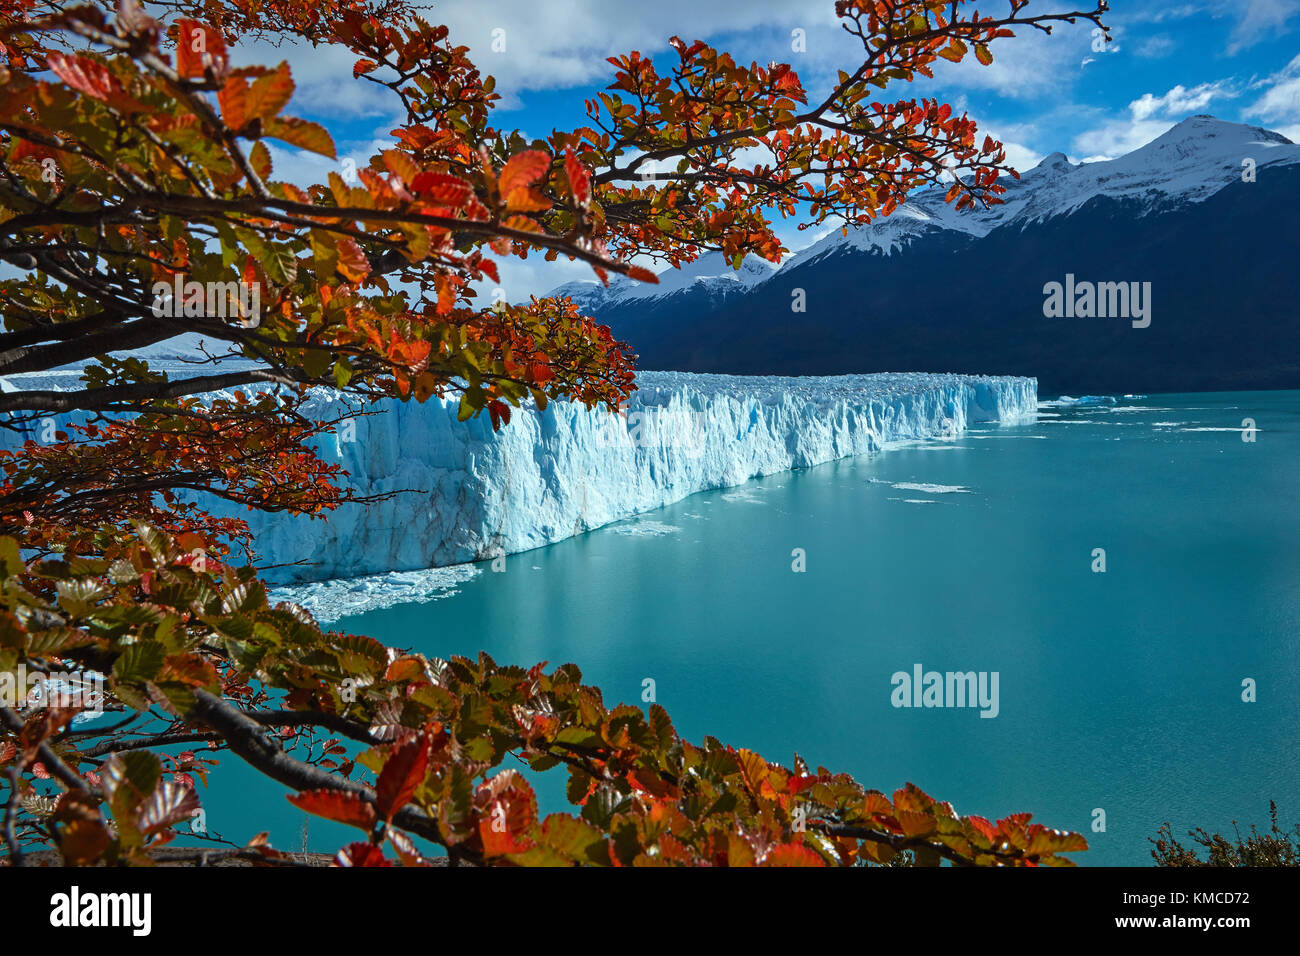 Le glacier Perito Moreno, et lenga arbres en automne, Parque Nacional Los Glaciares (zone du patrimoine mondial), Patagonie, Argentine, Amérique du Sud Banque D'Images